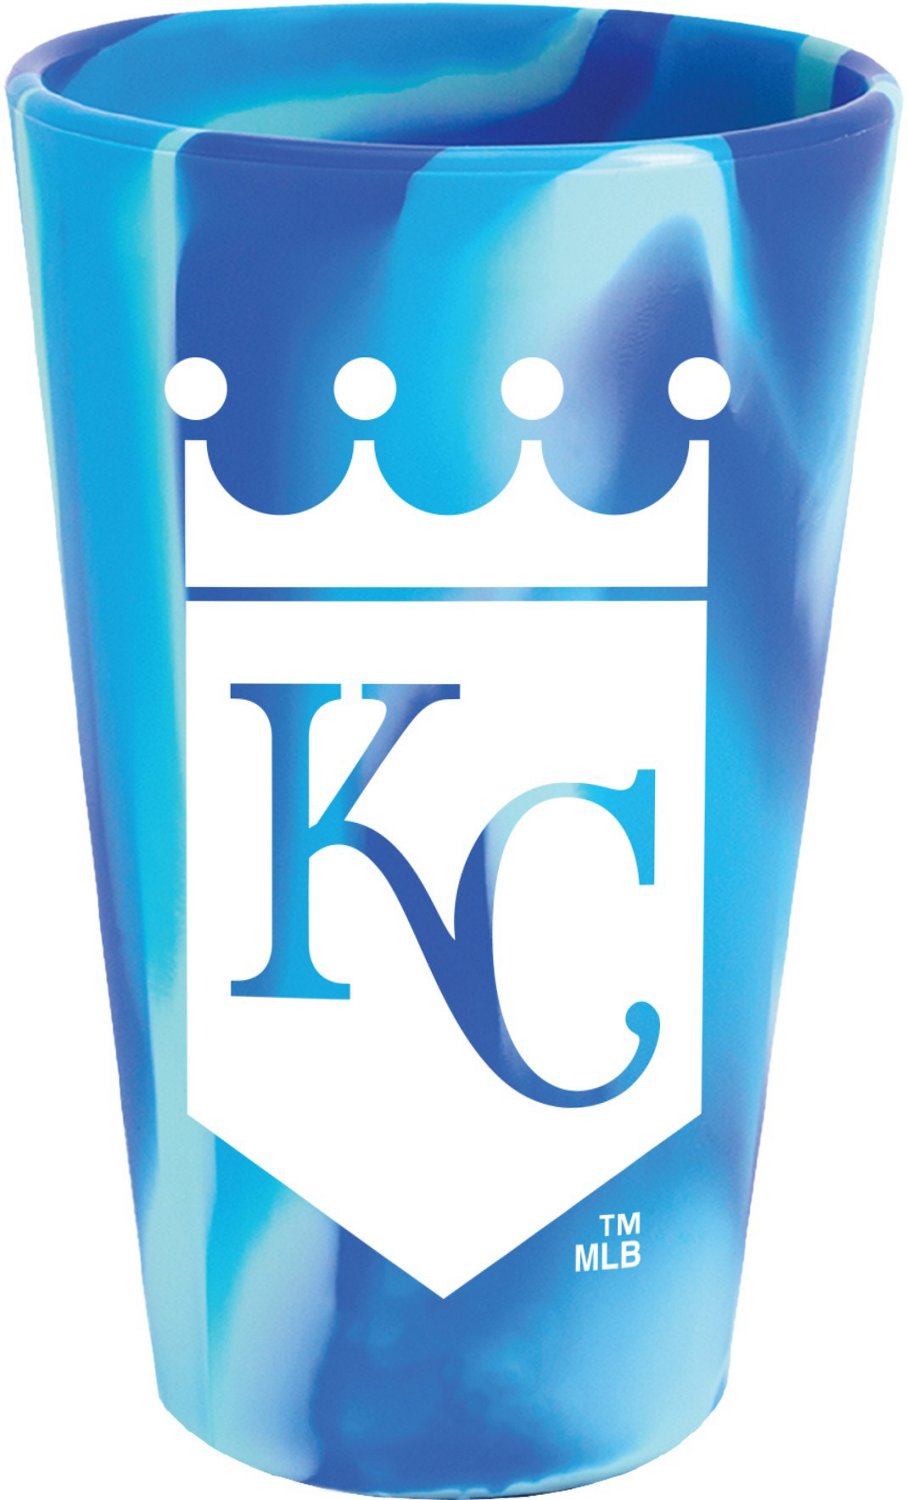 Kansas City Royals Gear, Royals WinCraft Merchandise, Store